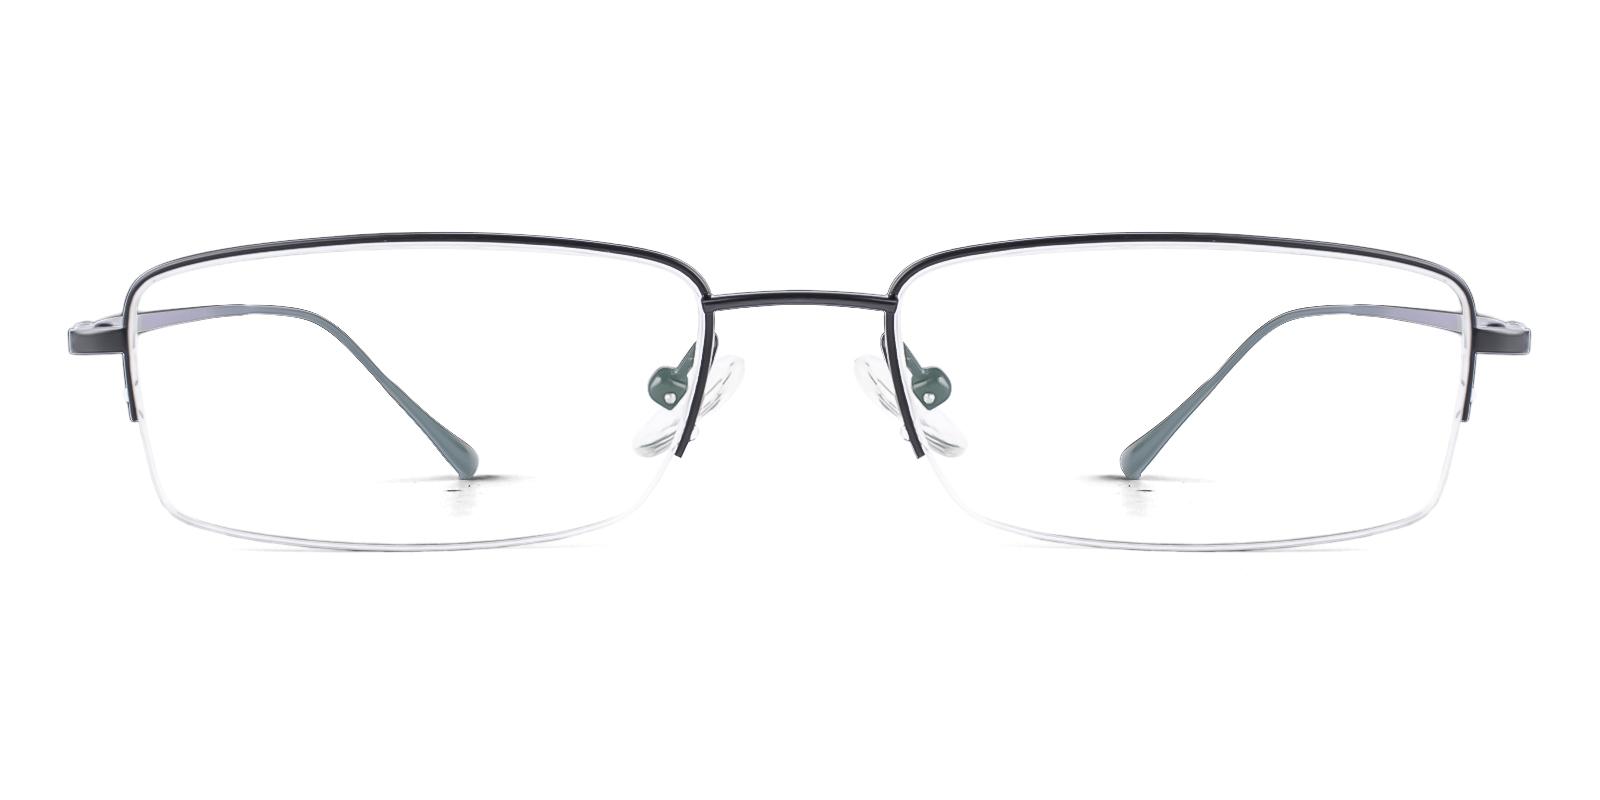 Lessry Black Titanium Eyeglasses , NosePads Frames from ABBE Glasses